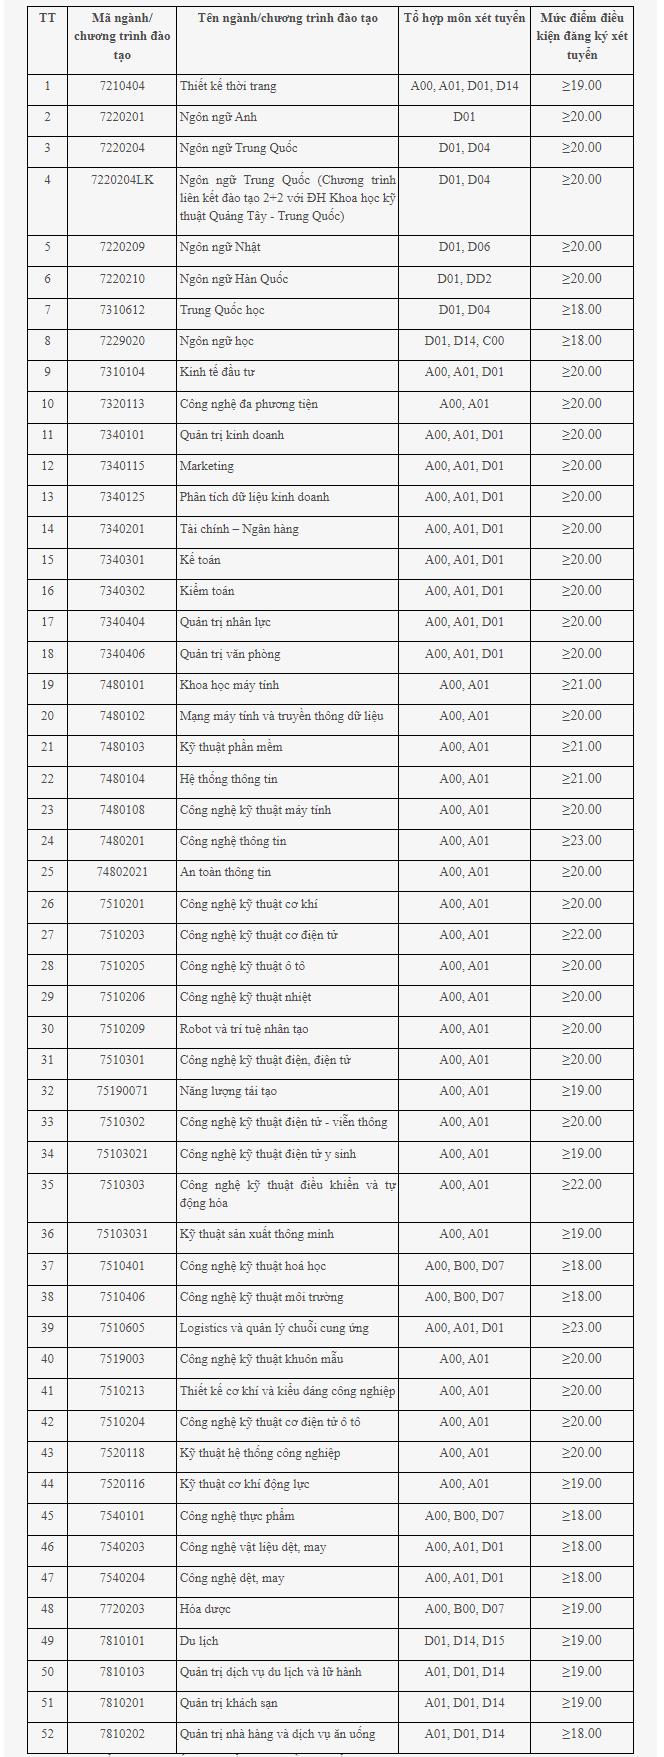 [giaoduc] Trường Đại học Công nghiệp Hà Nội công bố điểm sàn, cao nhất 23 điểm